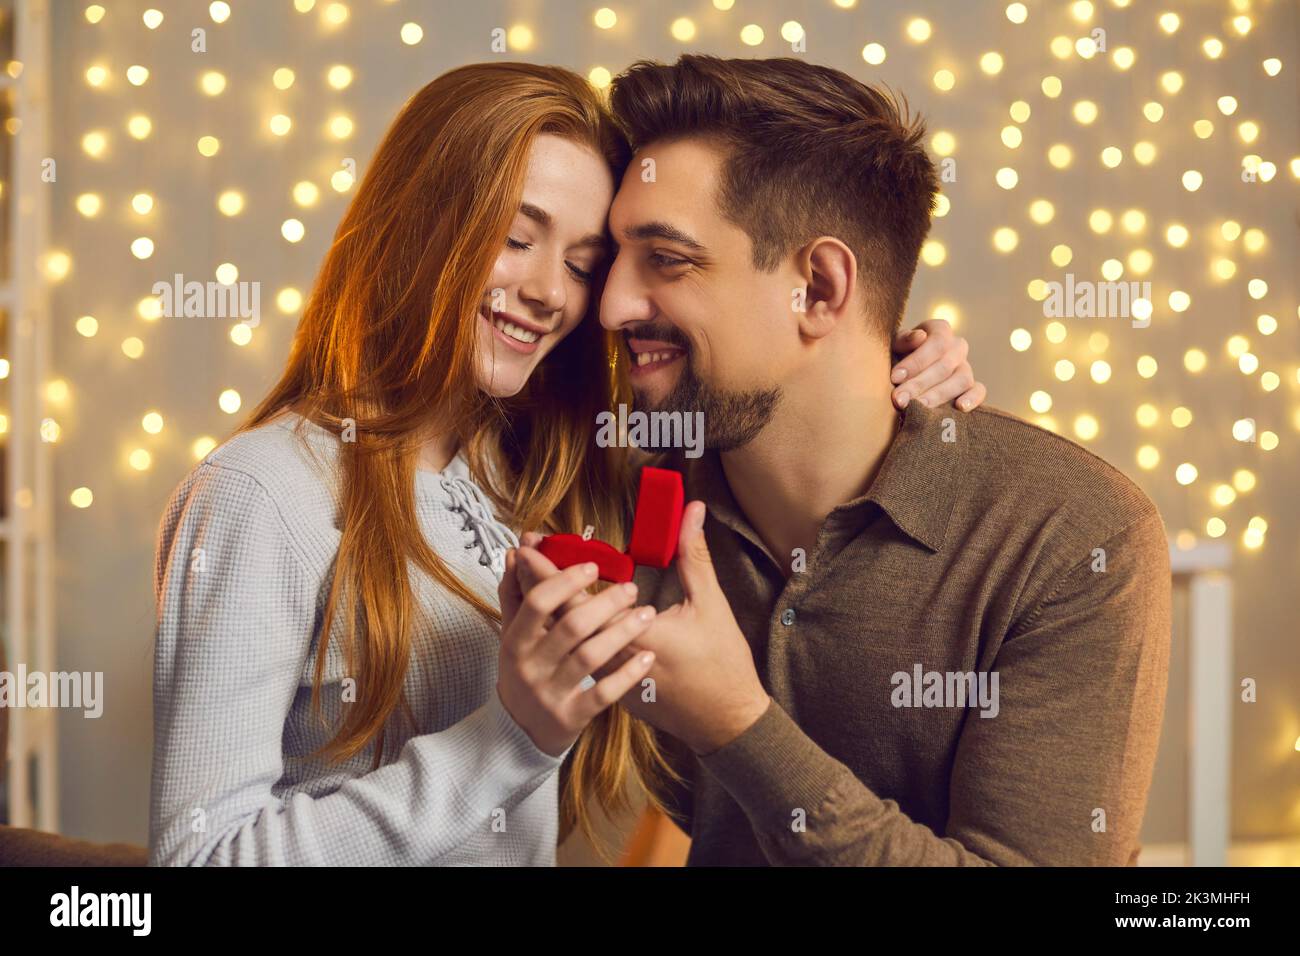 Heureux couple embrassant et regardant le ring après que la femme a dit oui et a accepté la proposition de mariage Banque D'Images